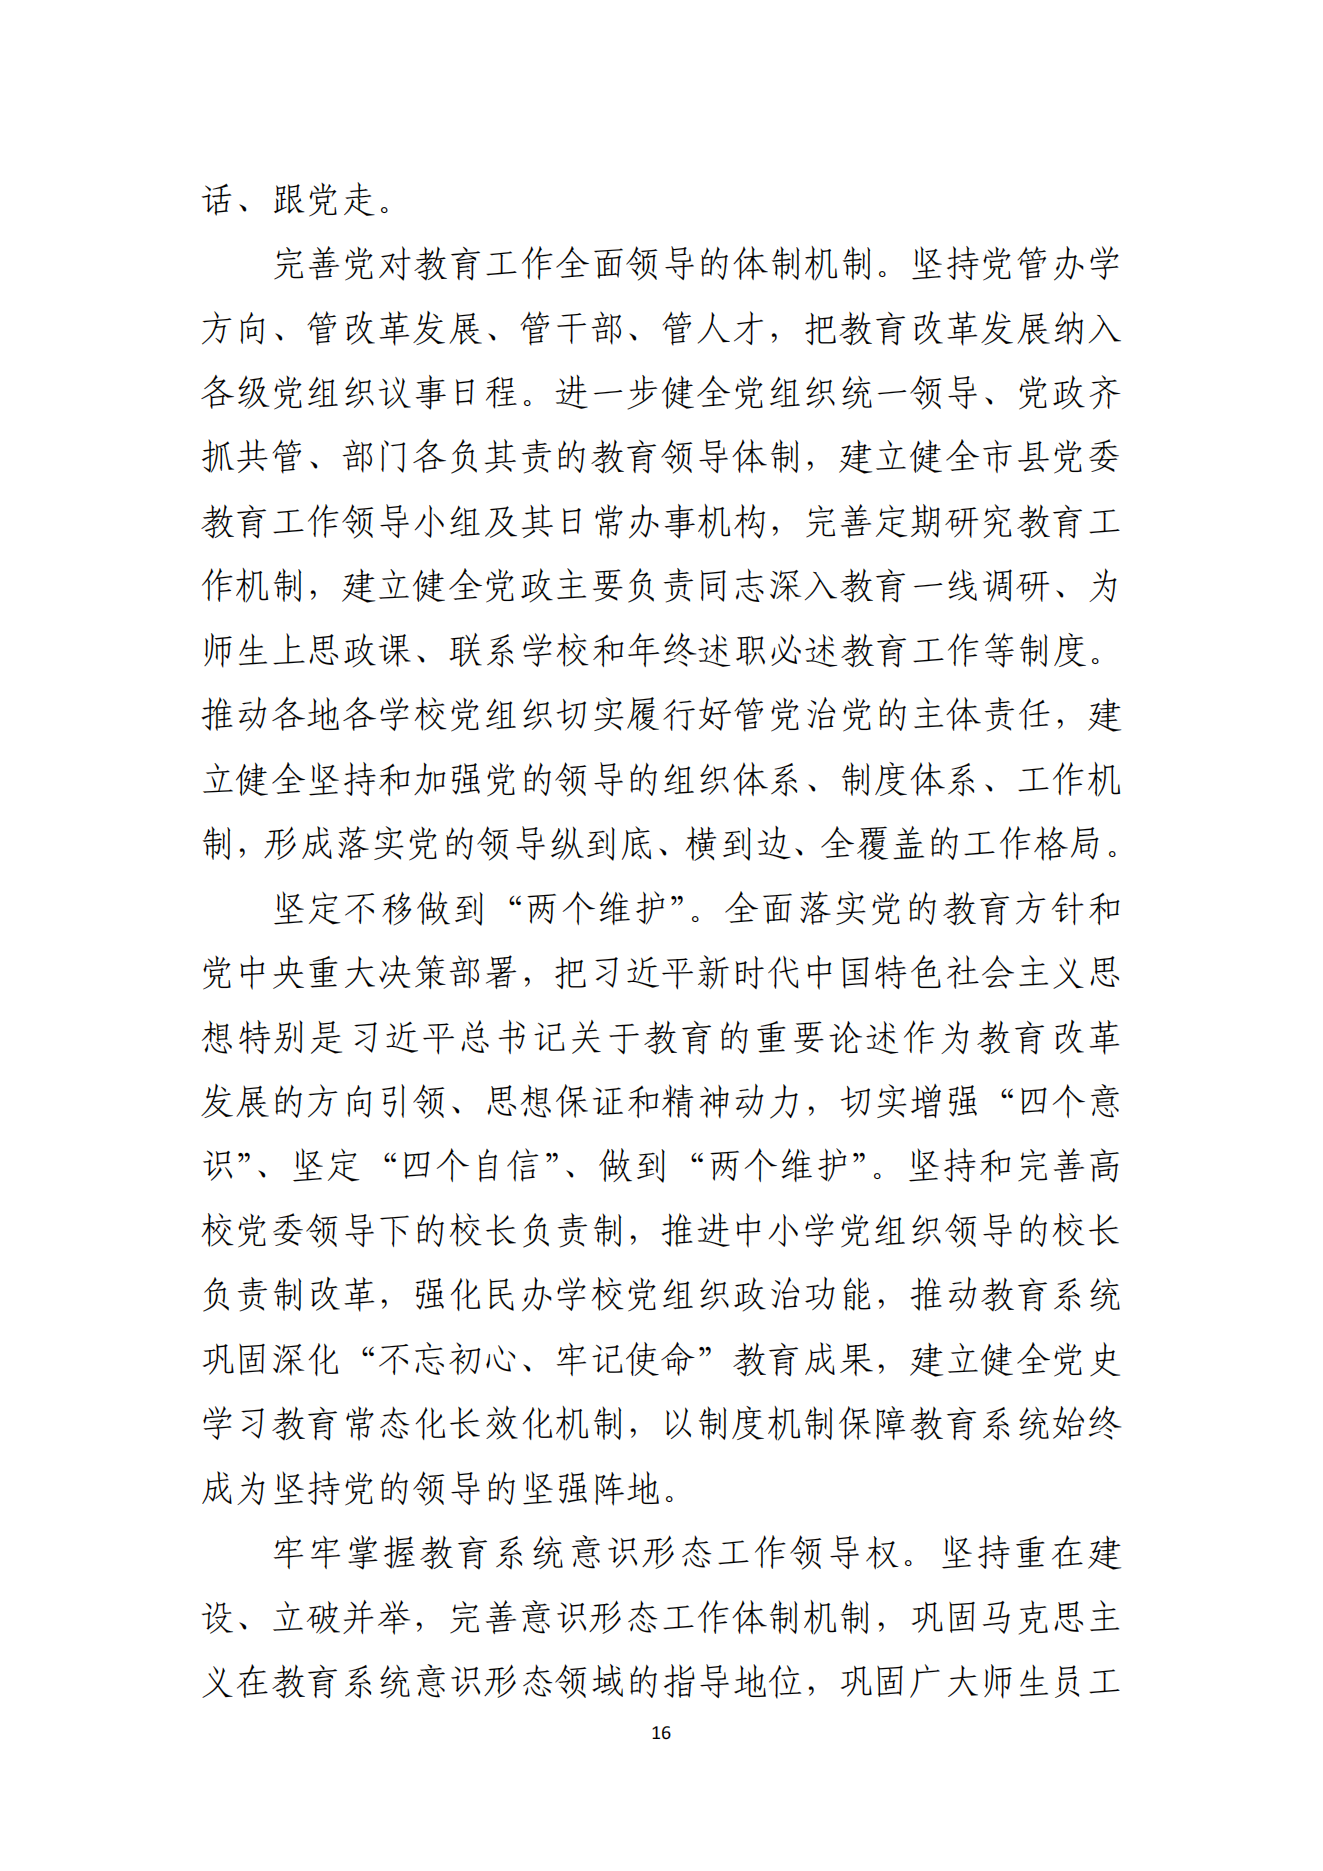 湛江市人民政府办公室关于印发湛江市教育发展“十四五”规划的通知_15.png